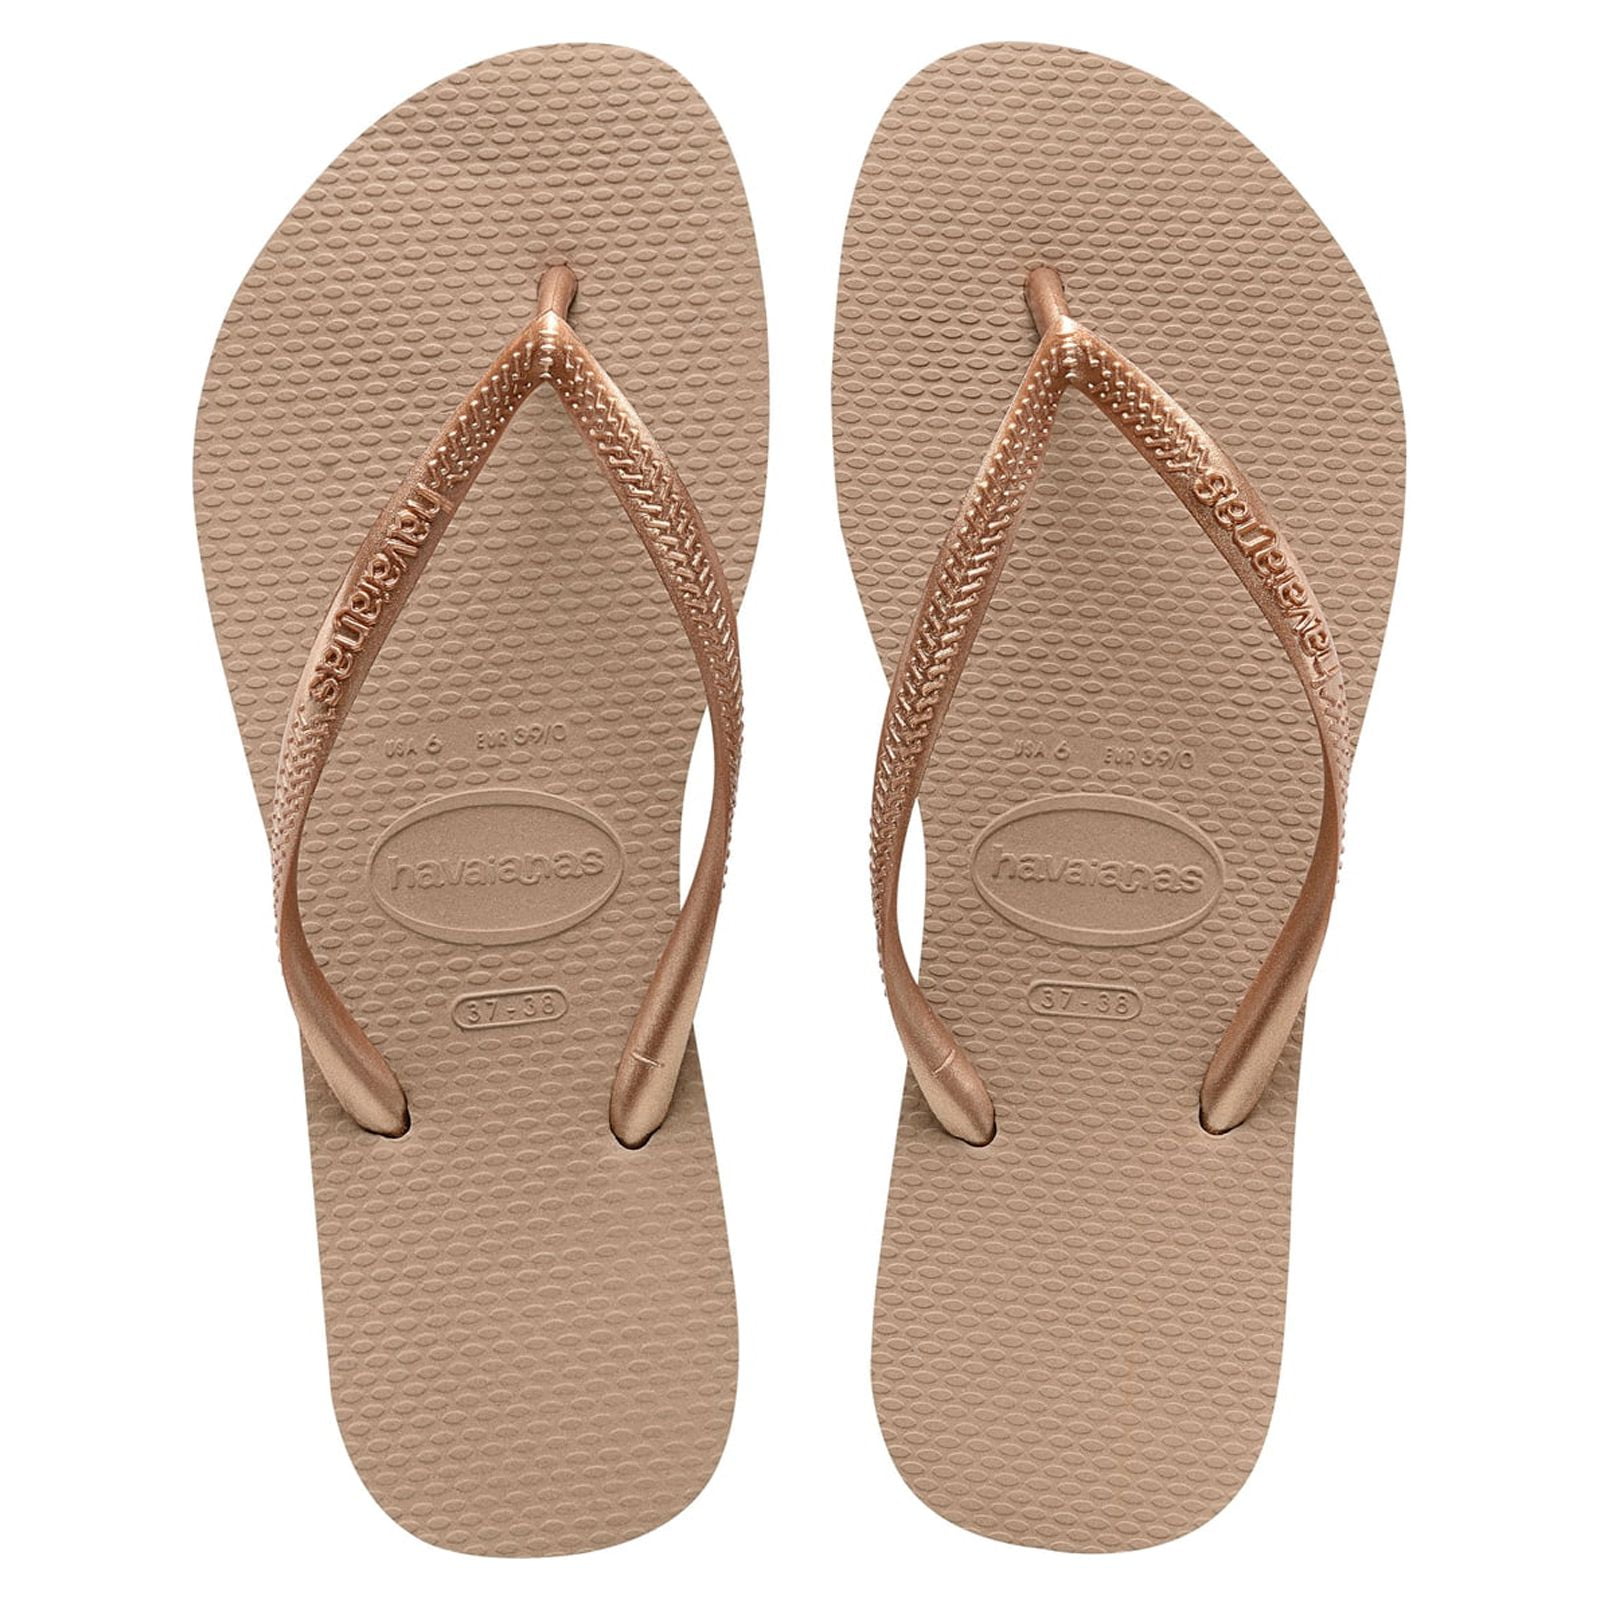 Buy Havaianas Womens Slim Flip Flop Sandal at Ubuy Myanmar